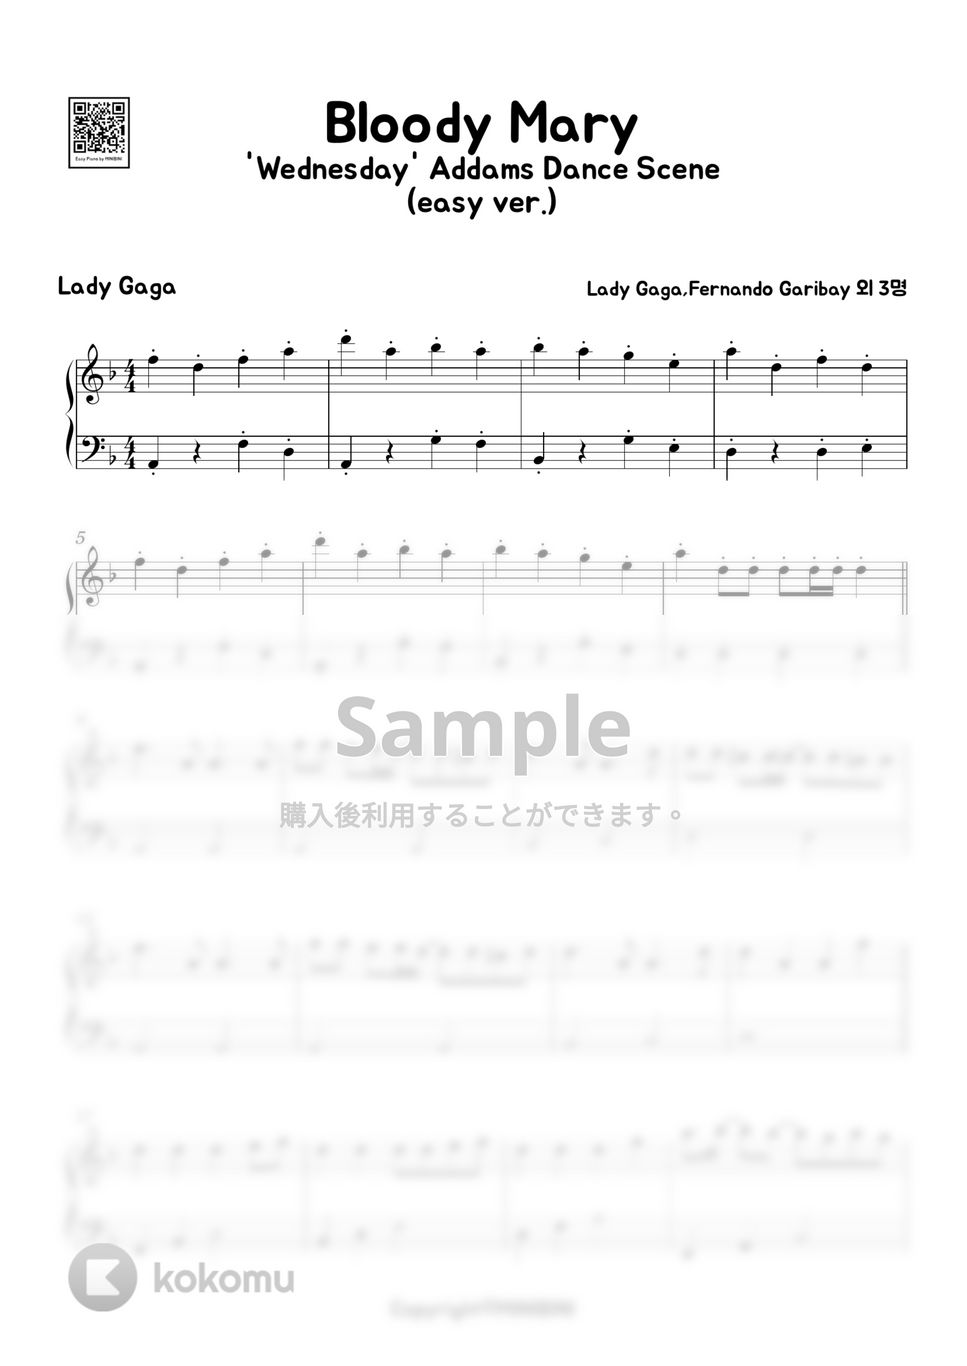 Lady Gaga - Bloody Mary(Easy Ver.) by MINIBINI